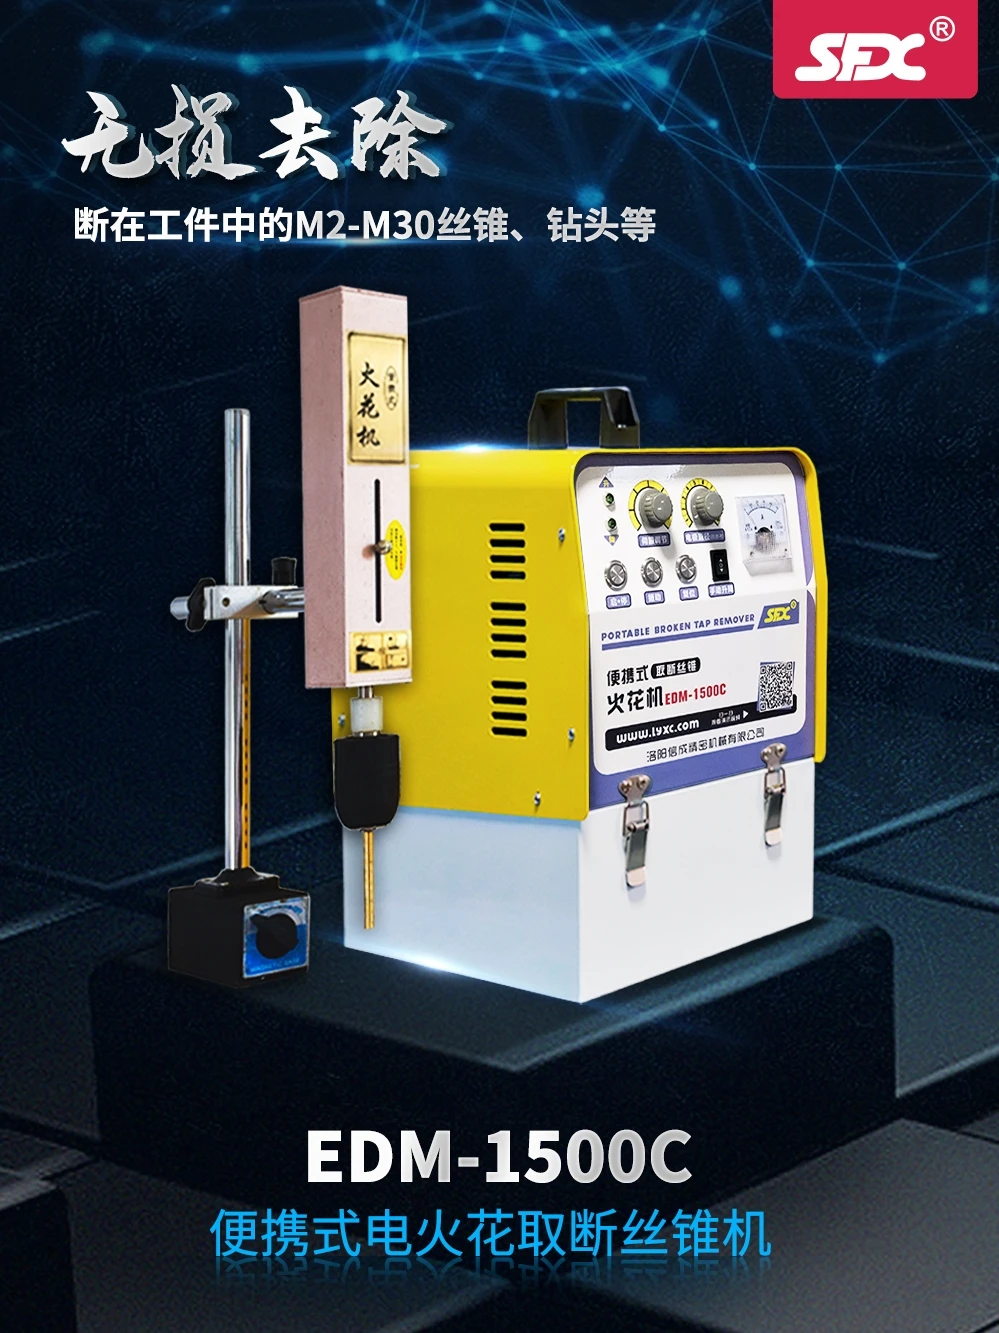 EDM-1500C Electric Spark Machine Cutting Tap Machine